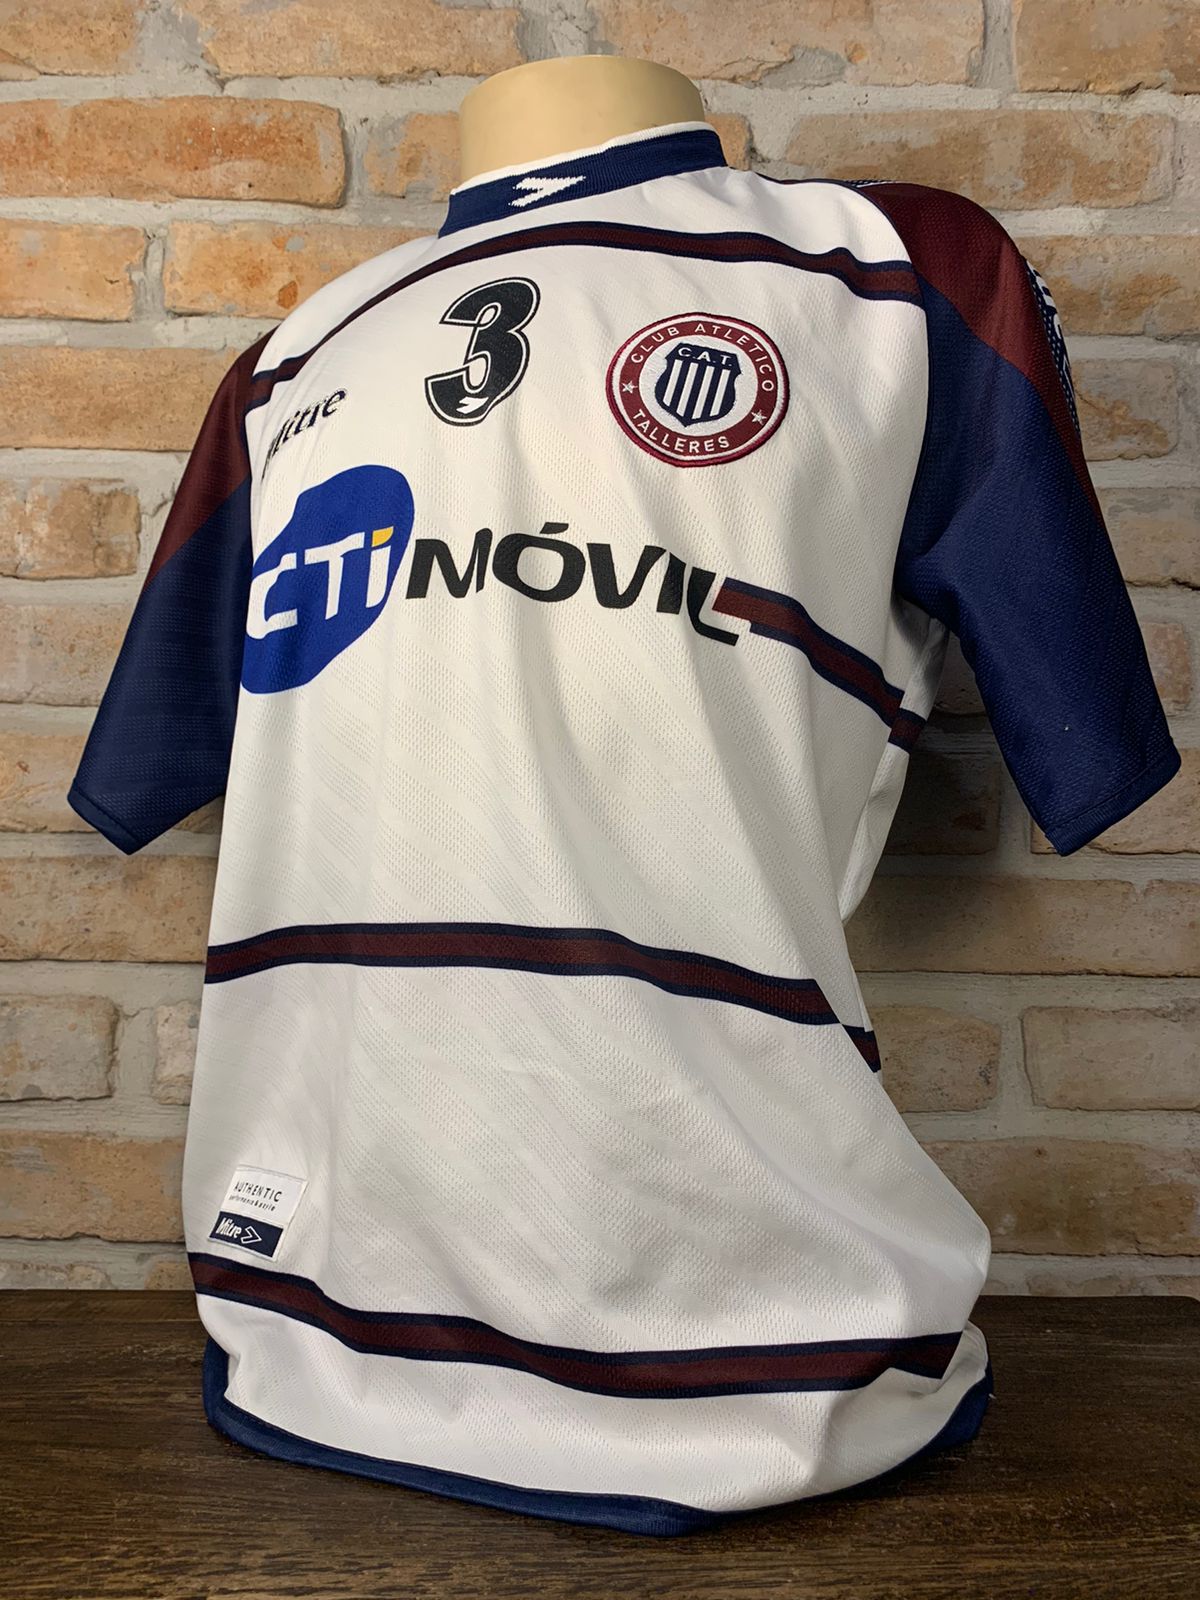 Camisa Club Atlético Independiente autografada pelo Victor Cuesta